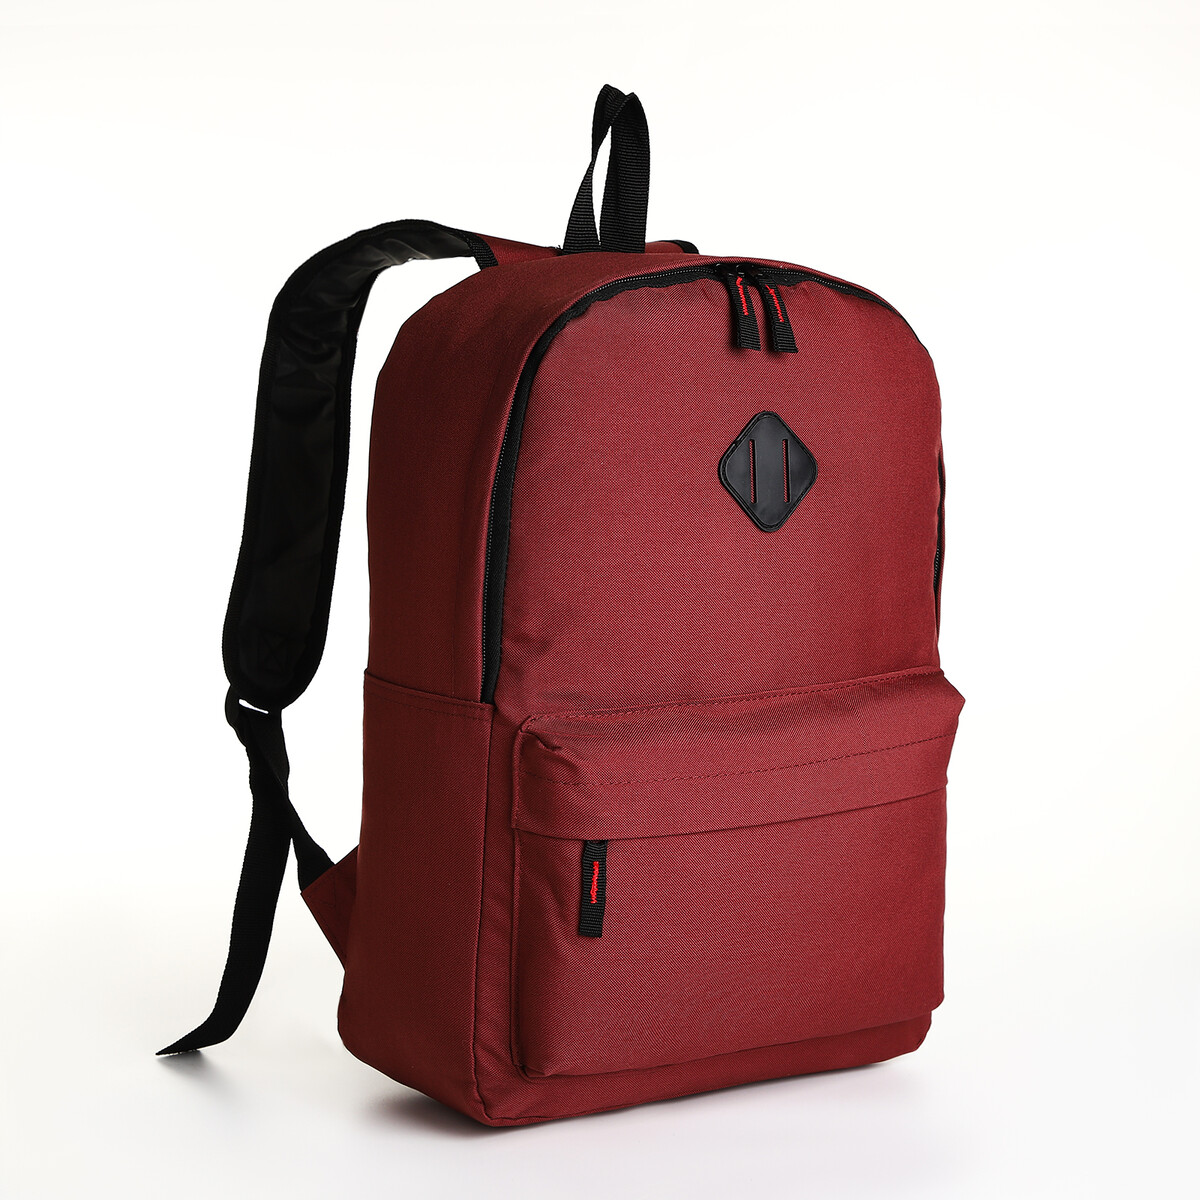 Рюкзак молодежный на молнии, наружный карман, цвет бордовый pixel bag рюкзак с led дисплеем pixel plus red line бордовый